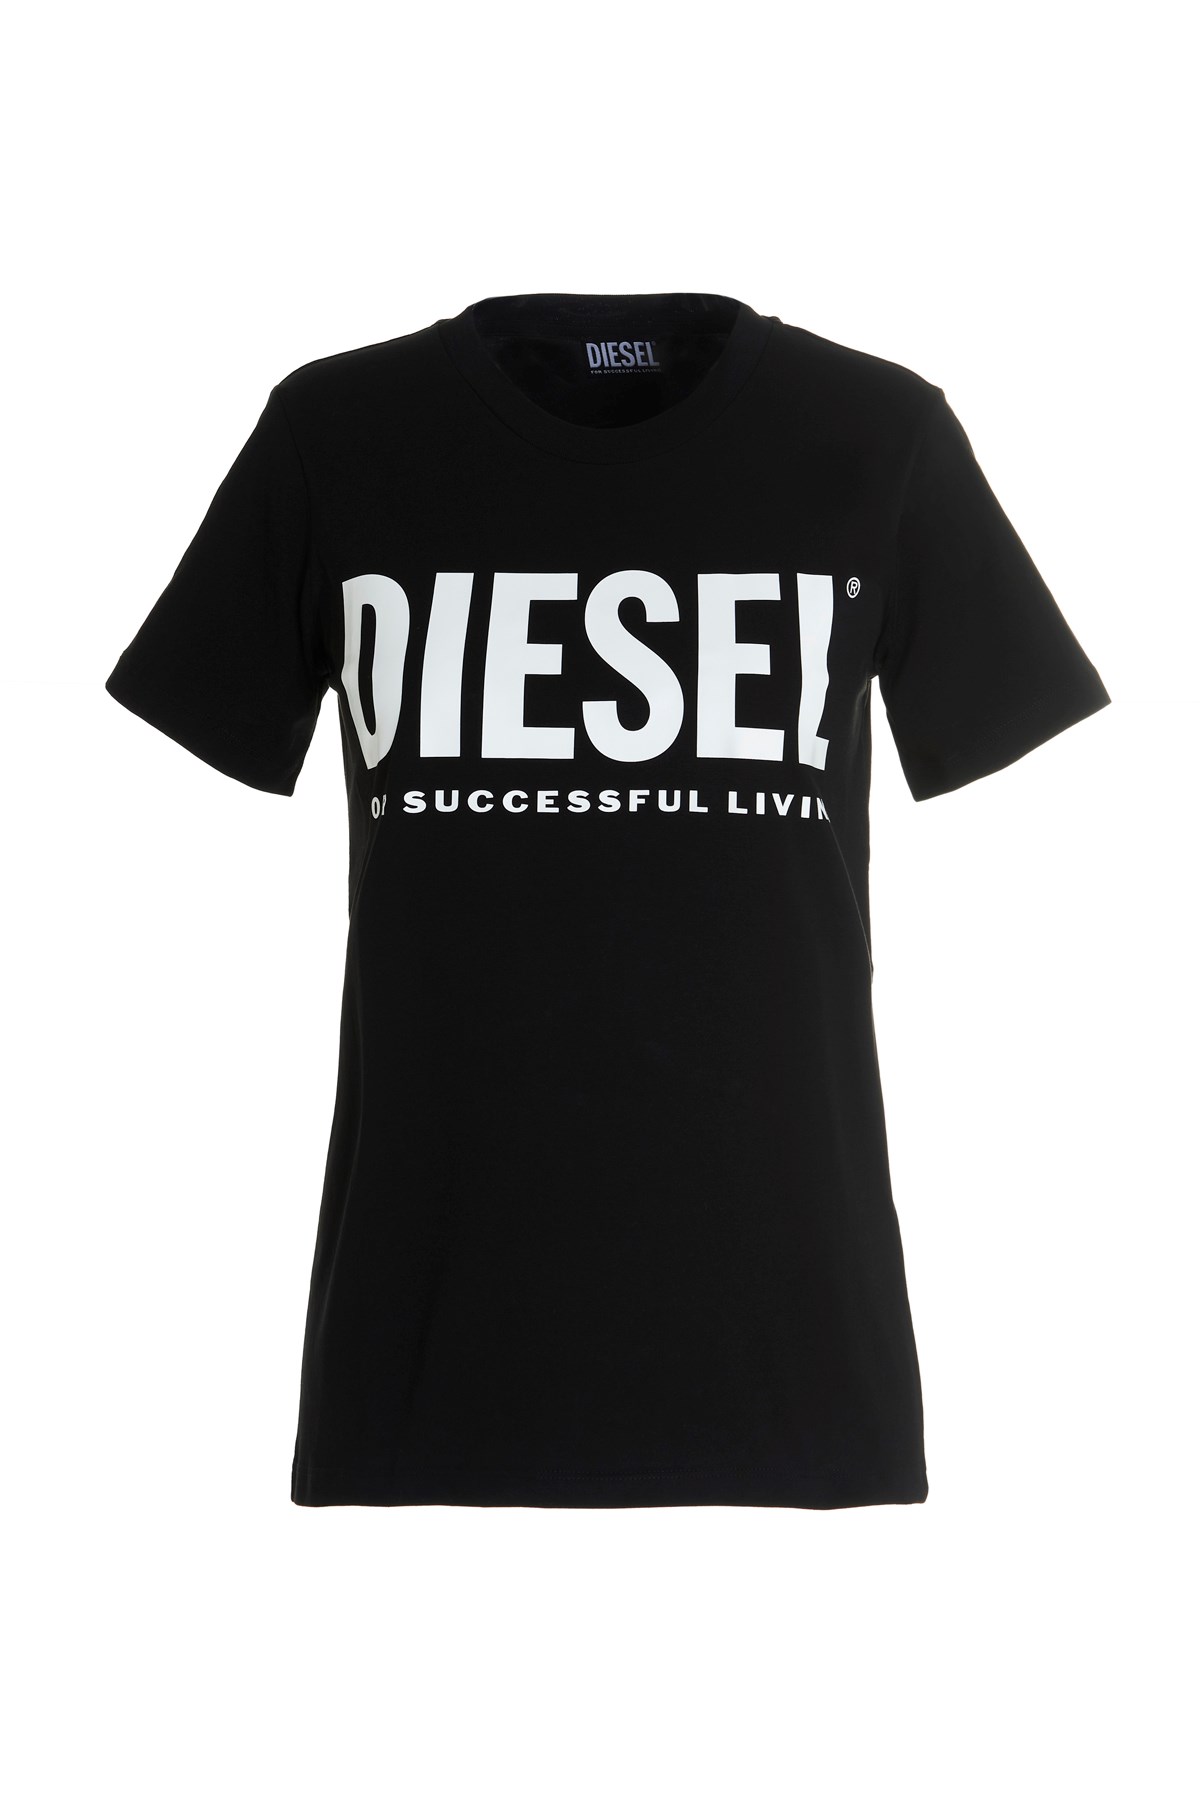 DIESEL T-Shirt Mit Logo